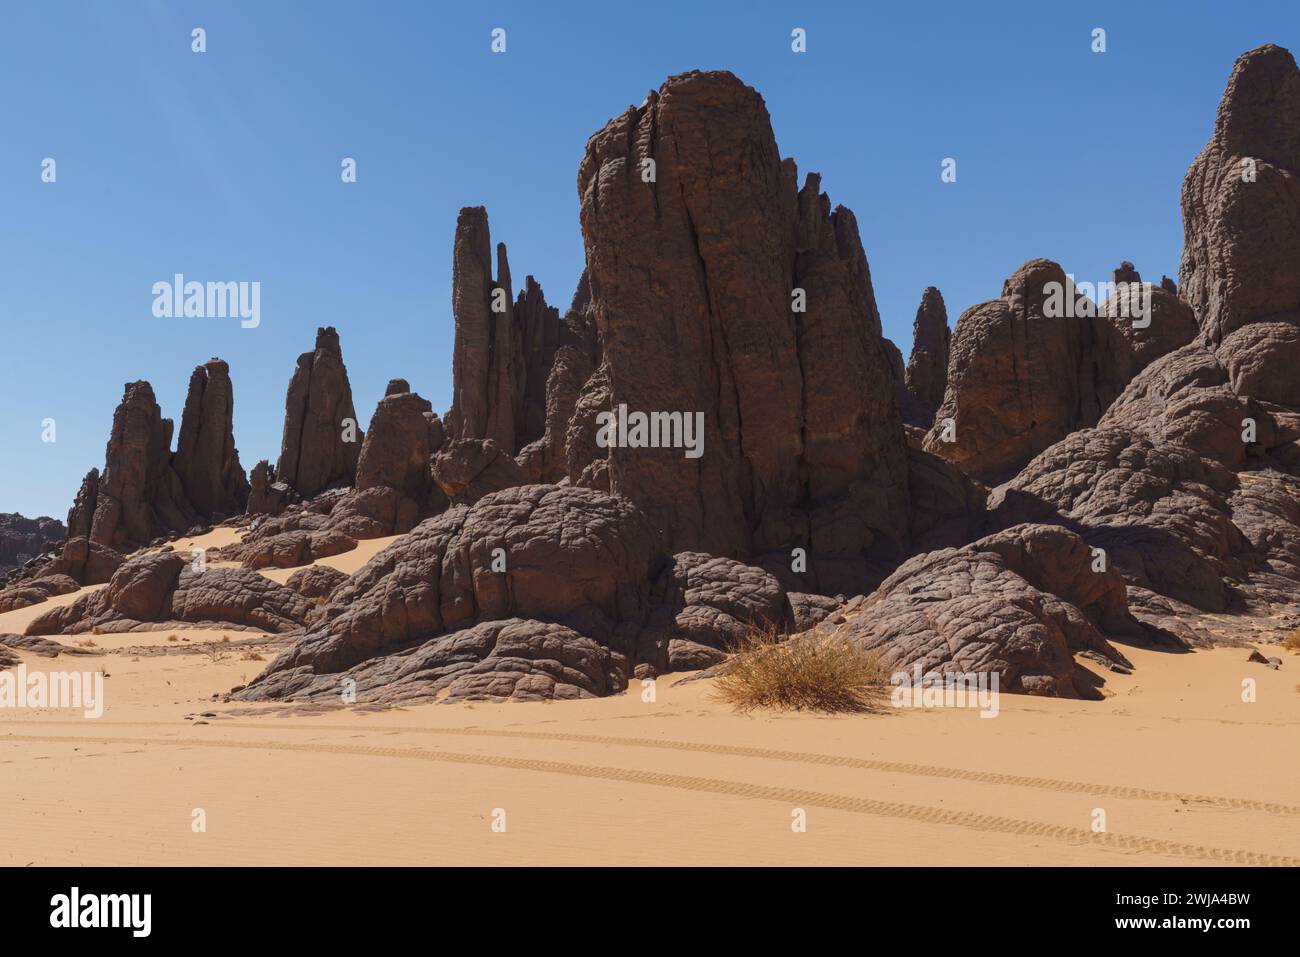 D'imposants pinacles rocheux s'élèvent des sables dorés dans le paysage sombre de Tassili N'Ajjer, mettant en valeur la beauté de la géologie du désert Banque D'Images